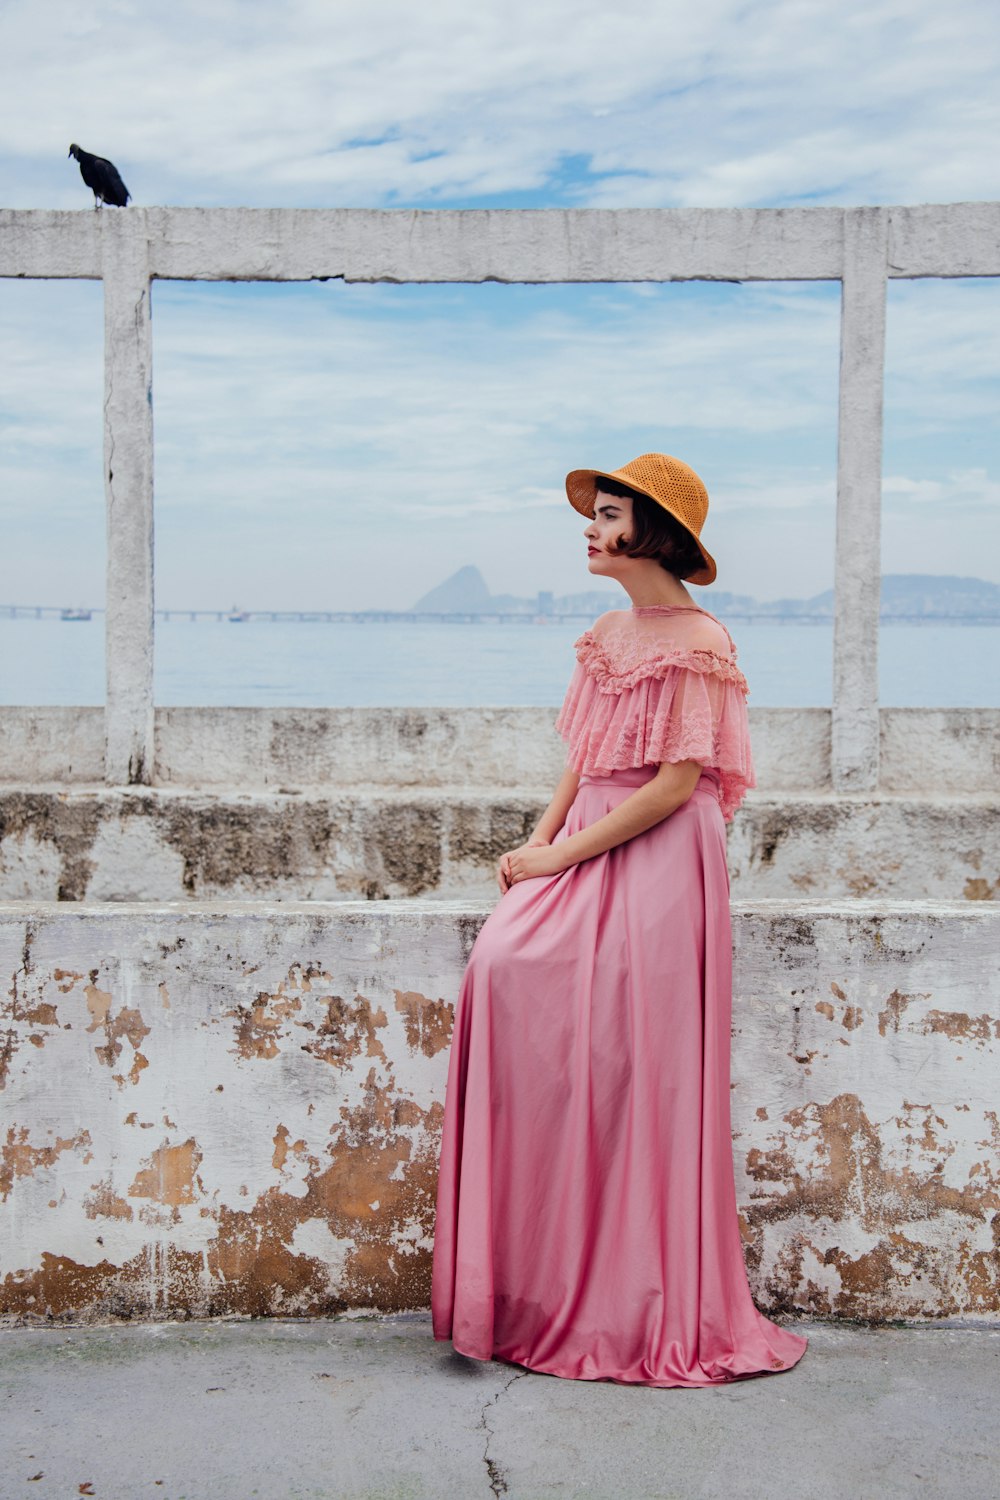 femme portant une robe rose debout à côté d’un mur blanc